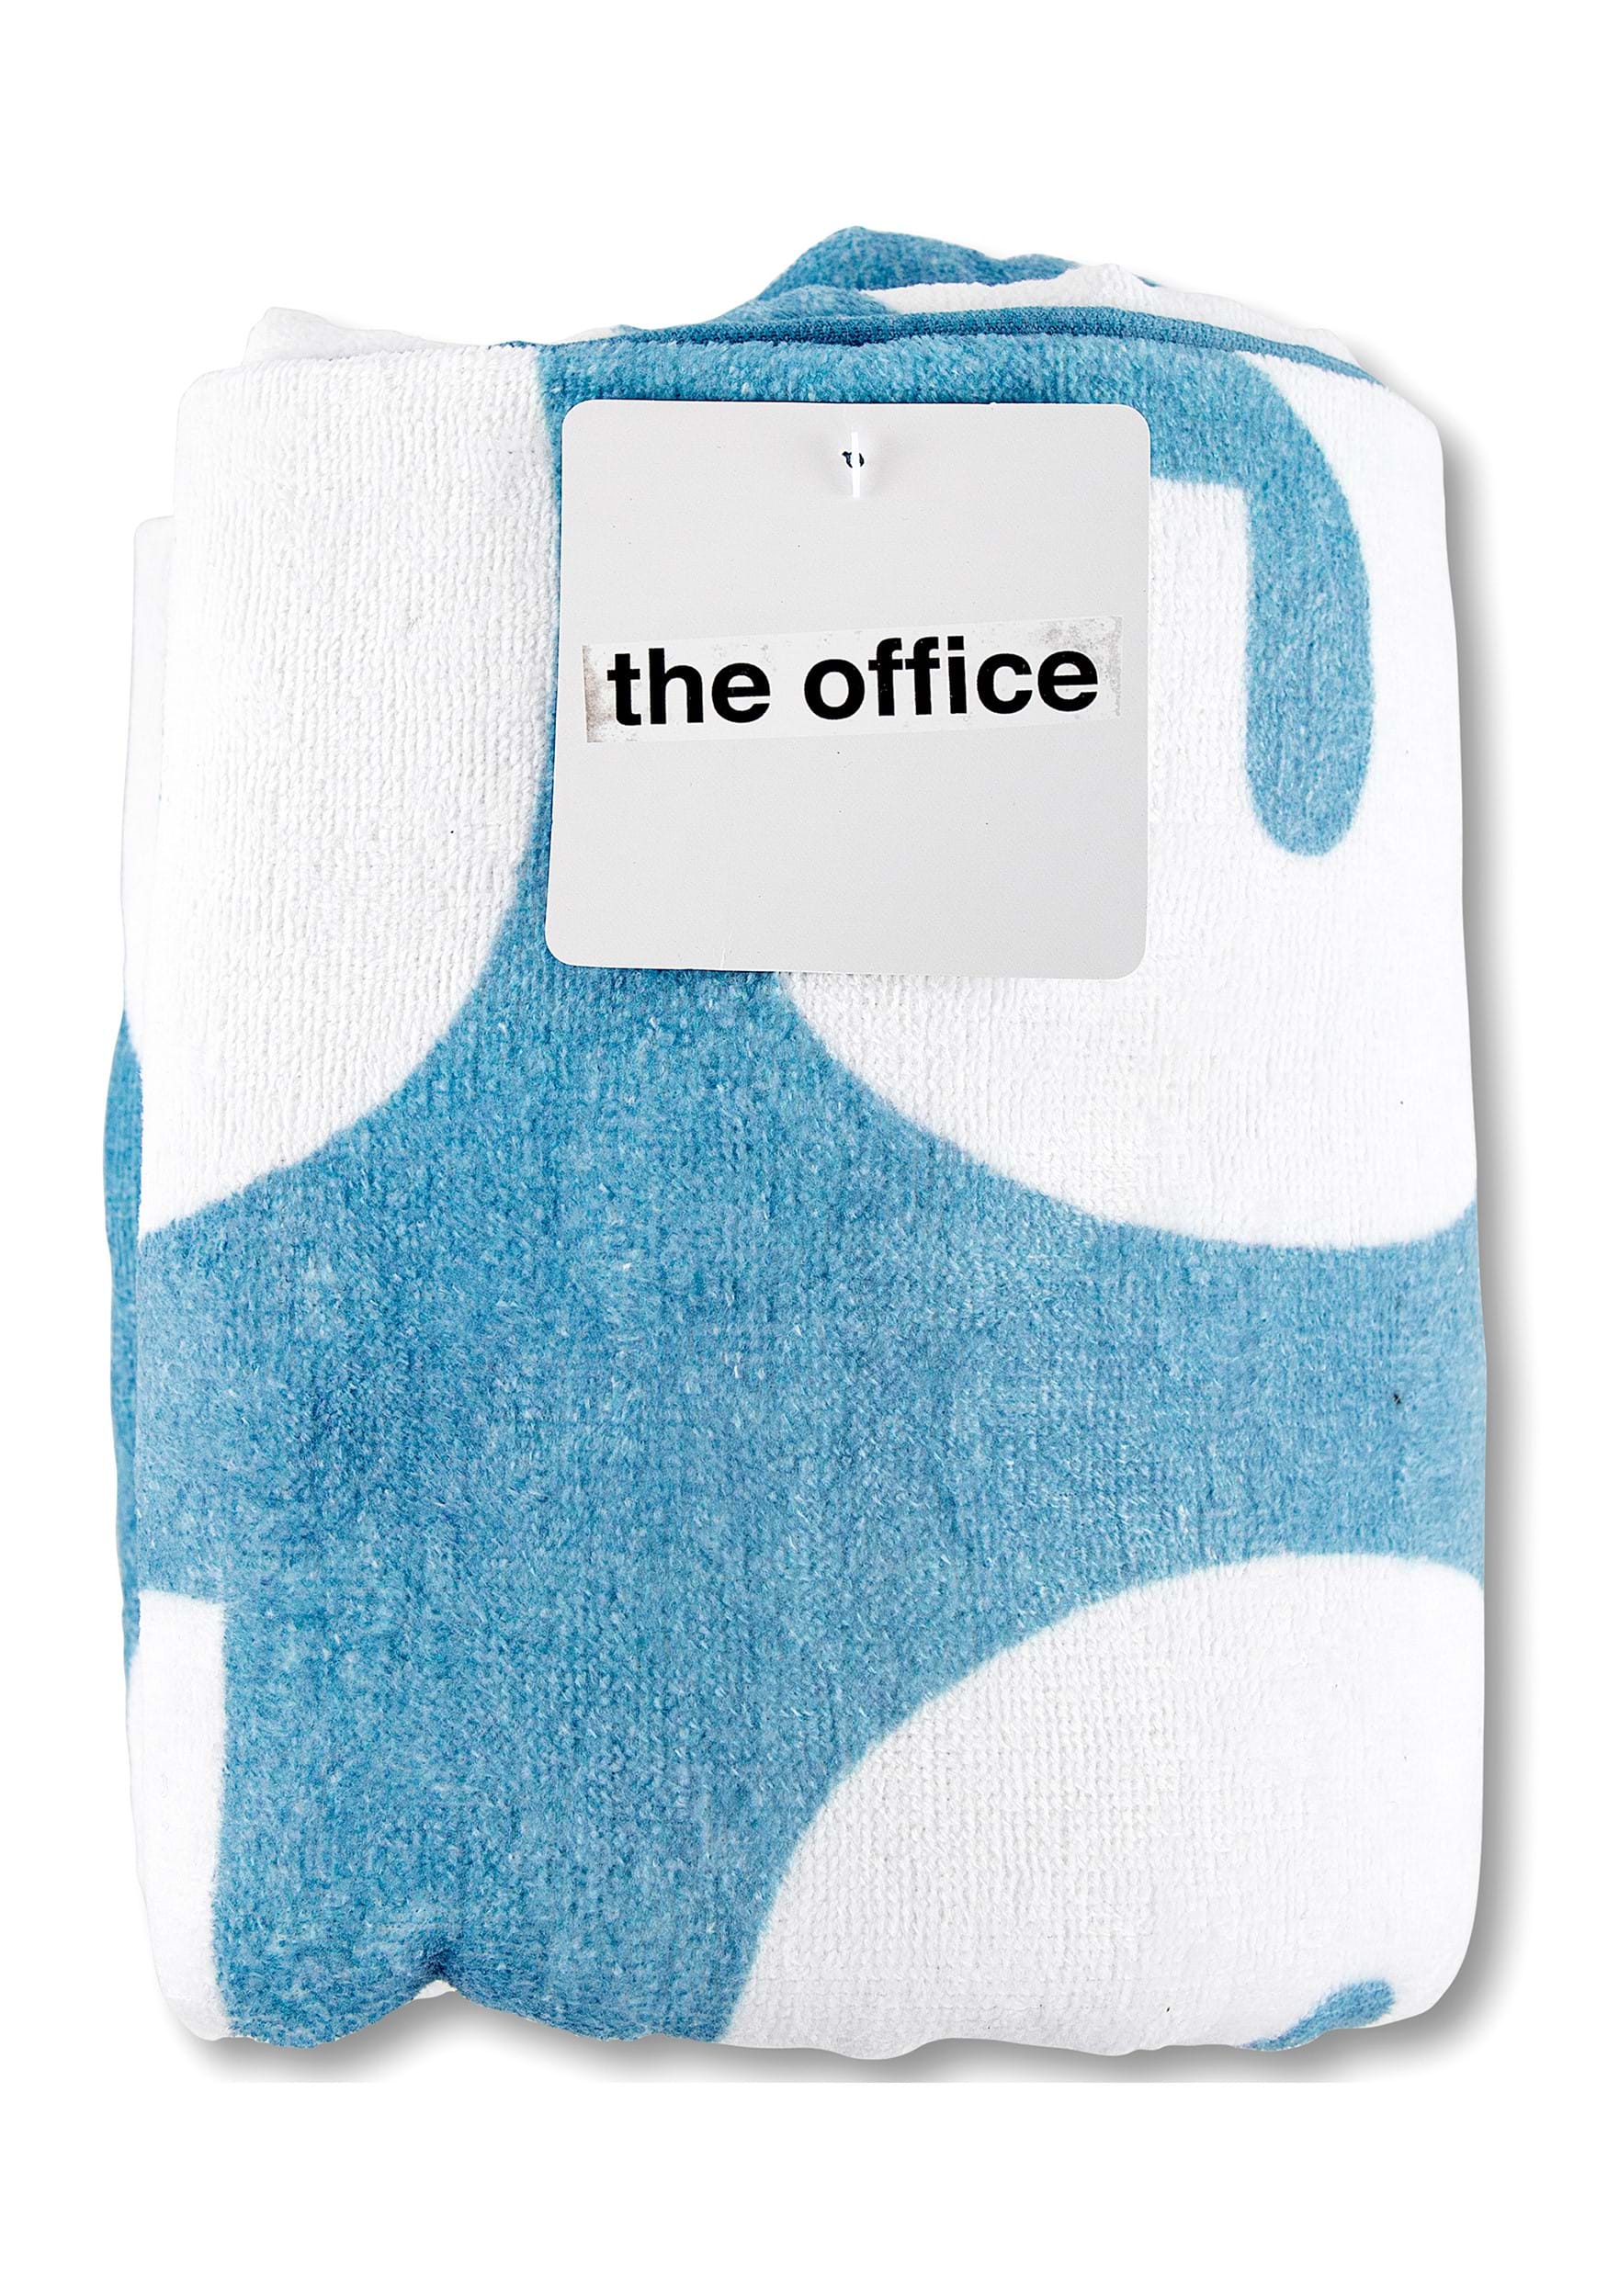 The Office World's Best Boss Beach Towel